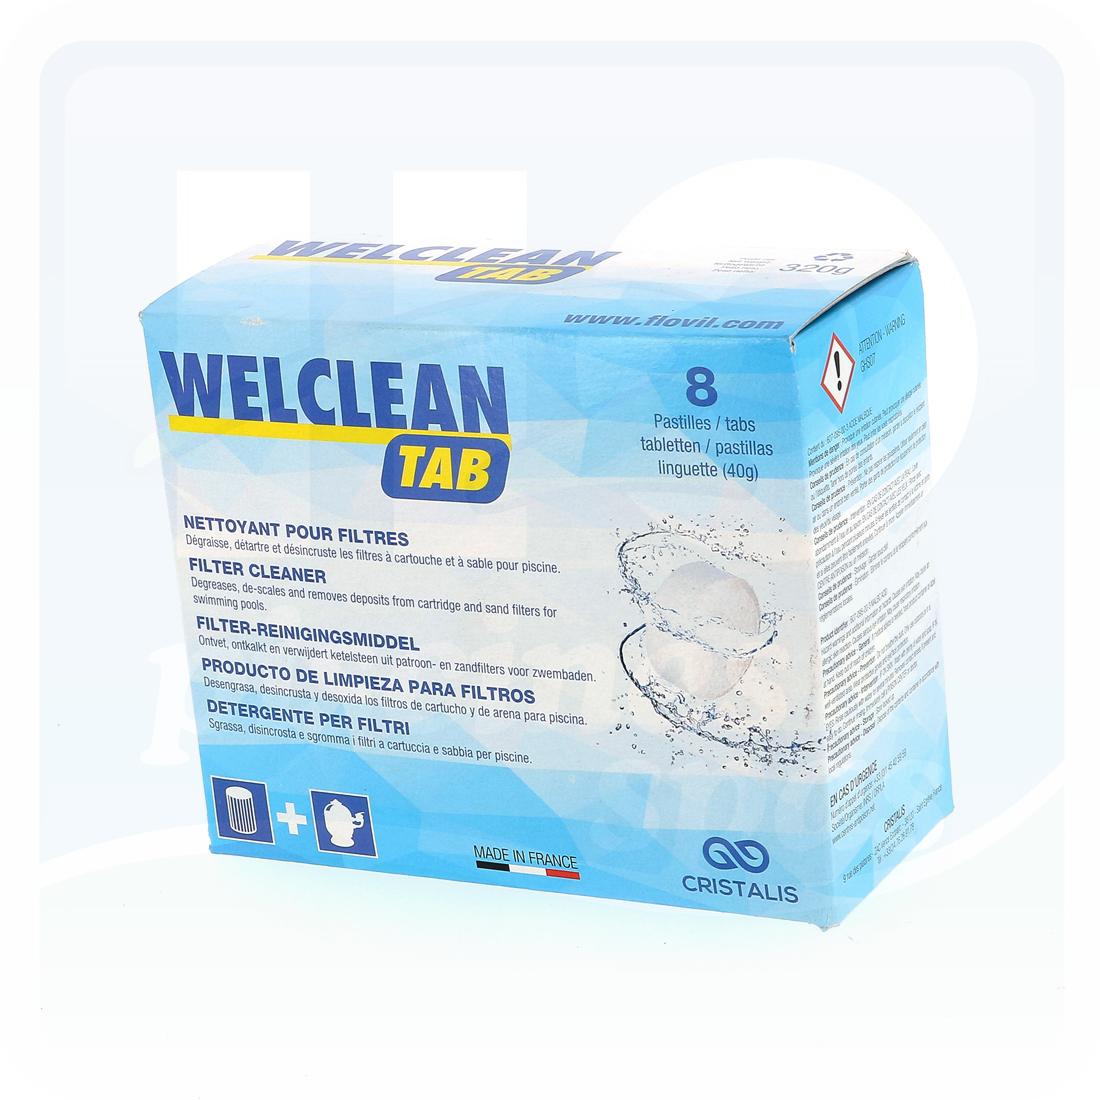 h2o 130349 nettoyant pour filtre welclean tab boite de 8 pastilles